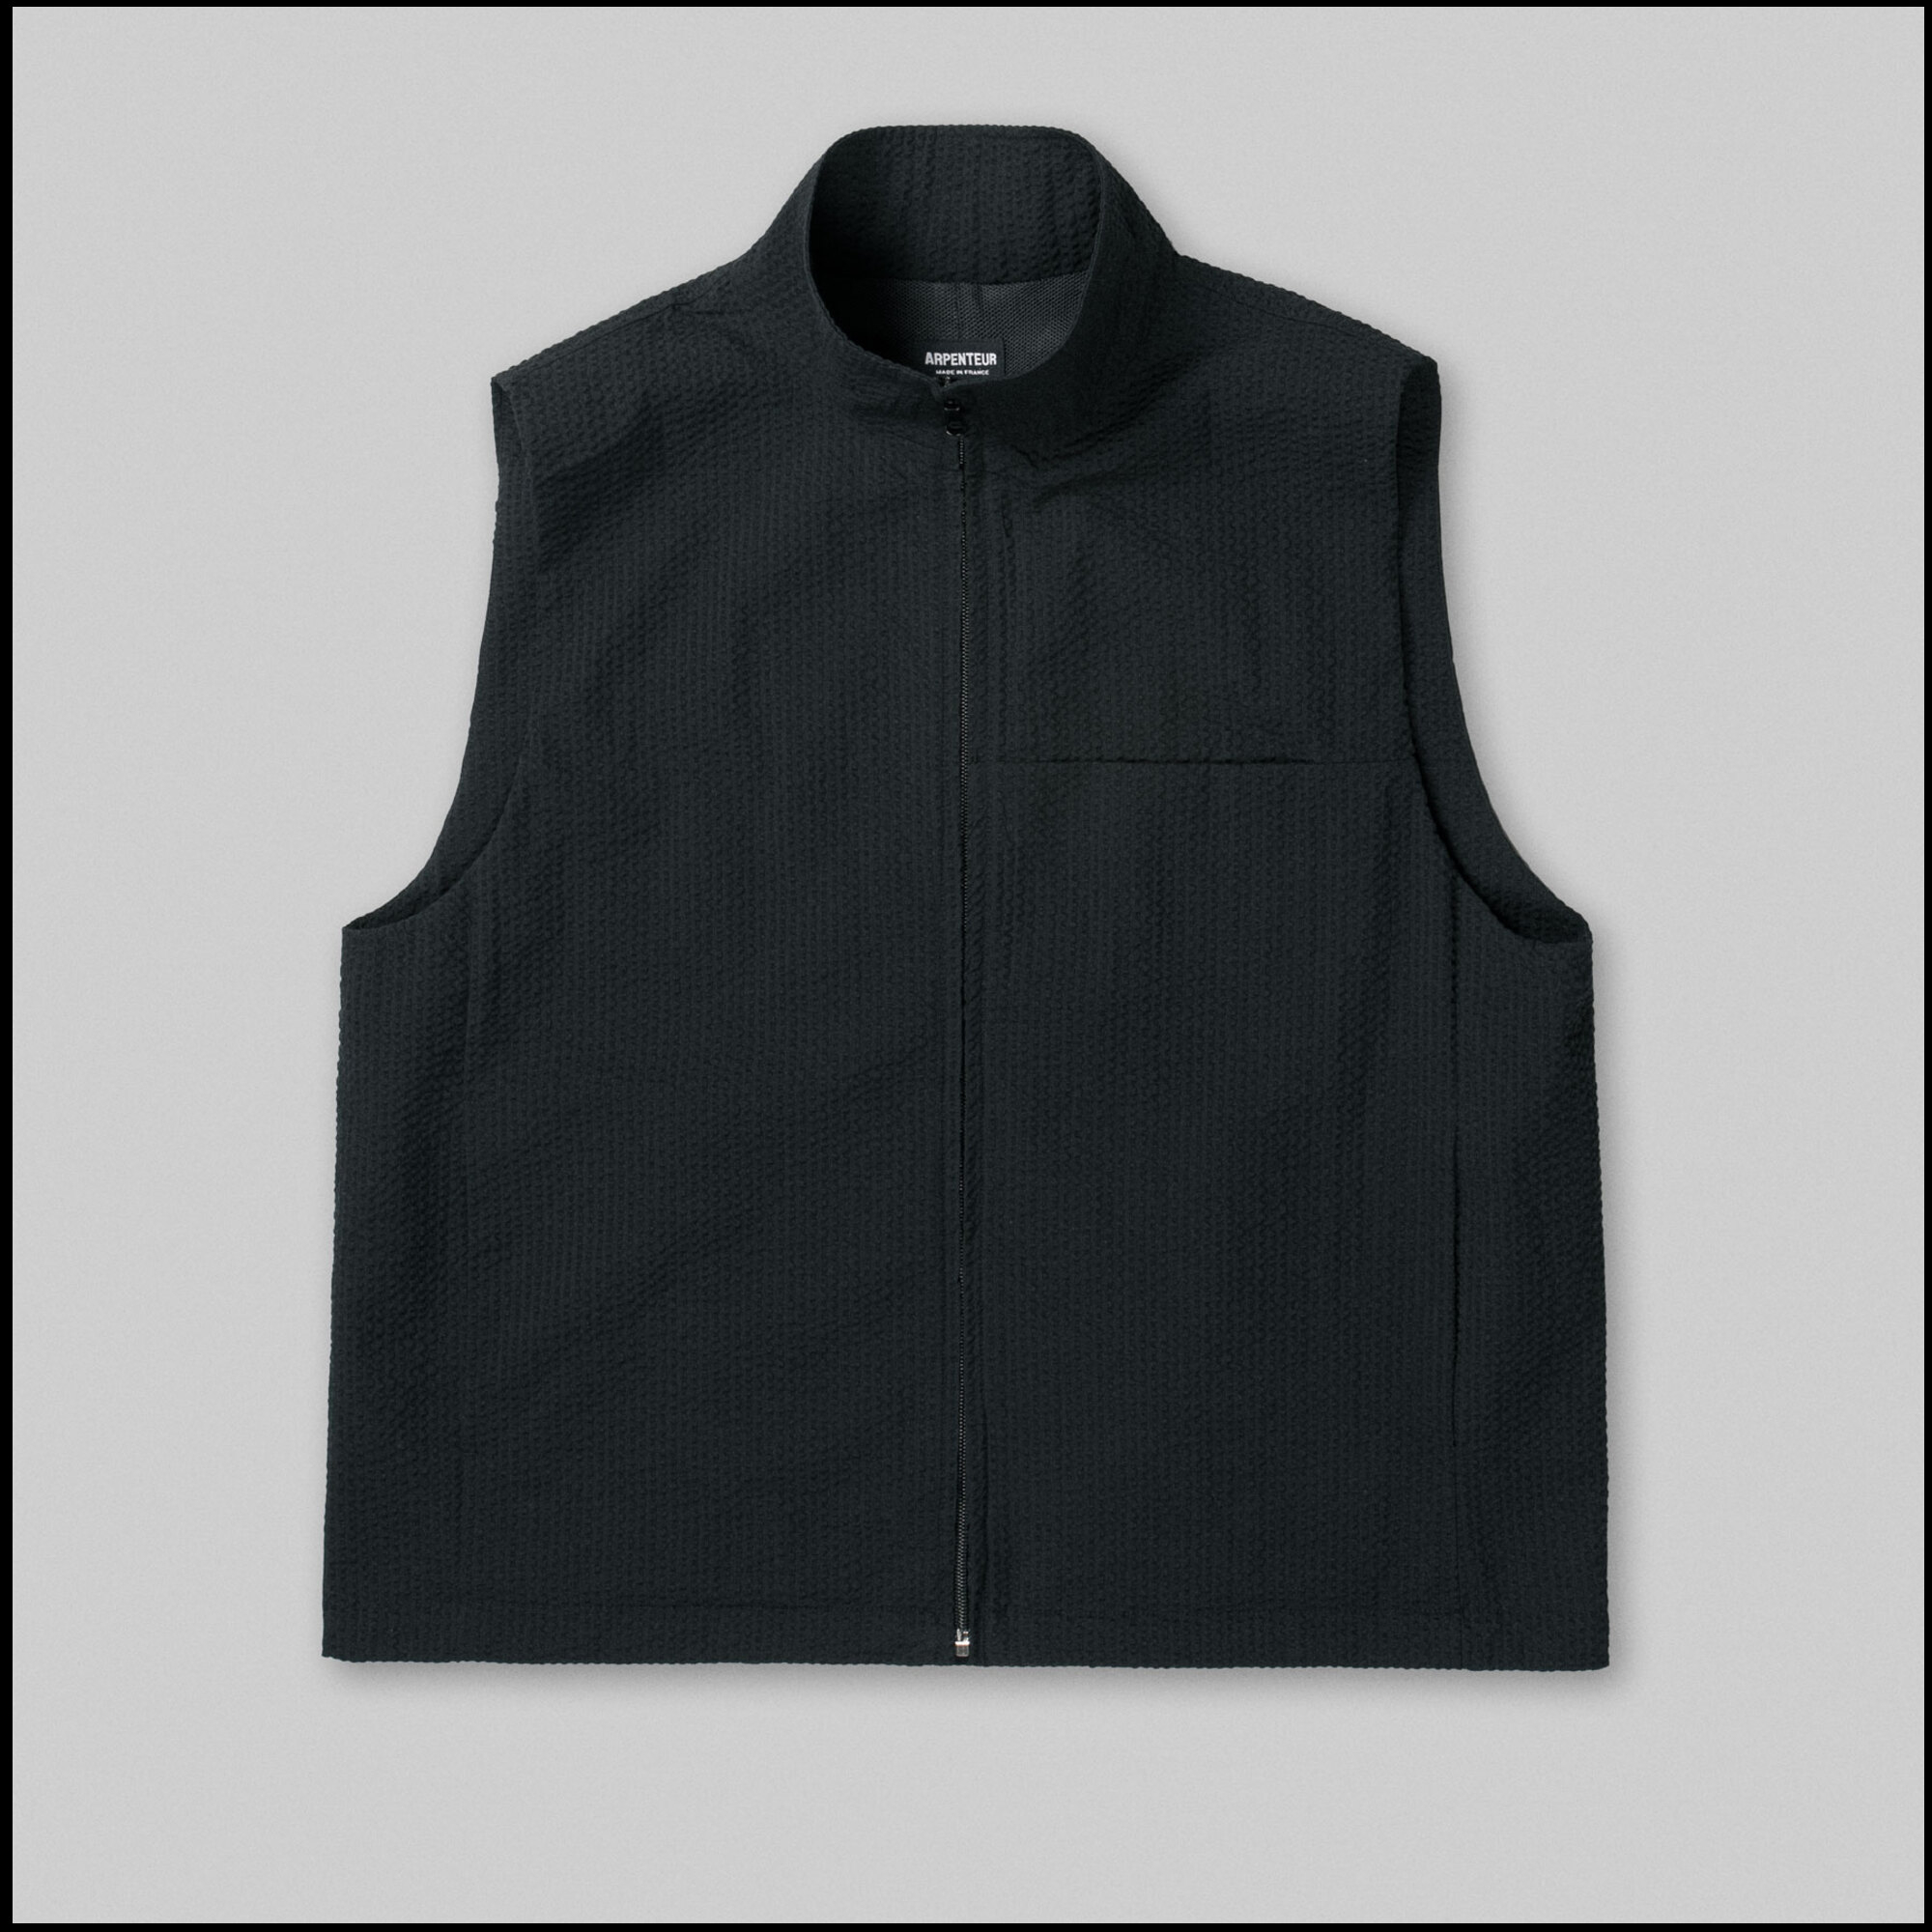 TRACK vest by Arpenteur in Black color